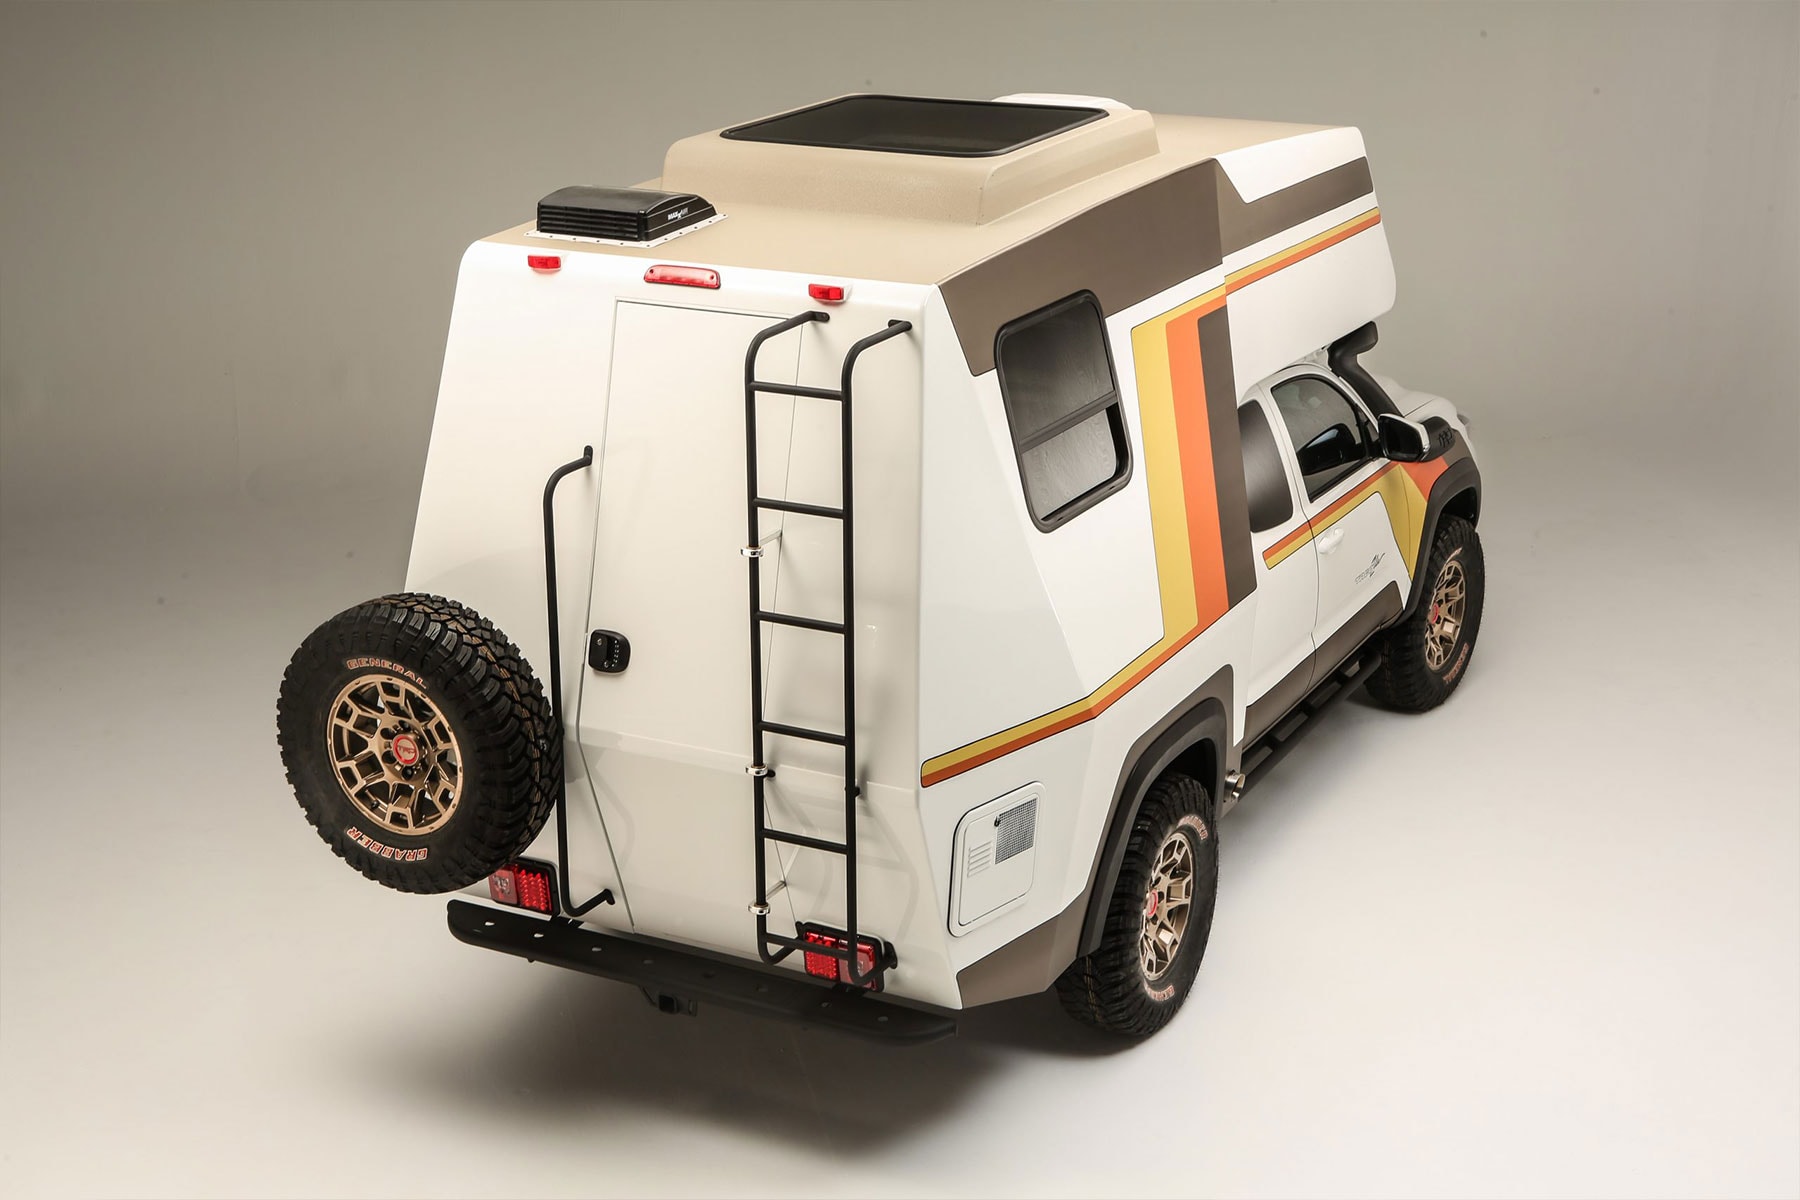 米トヨタが1970年代のキャンピングカーをモチーフとした新型モデルを世界初公開 Toyota 2021 SEMA Tacozilla Tacoma Camper Overlanding Rig info trucks 4x4 